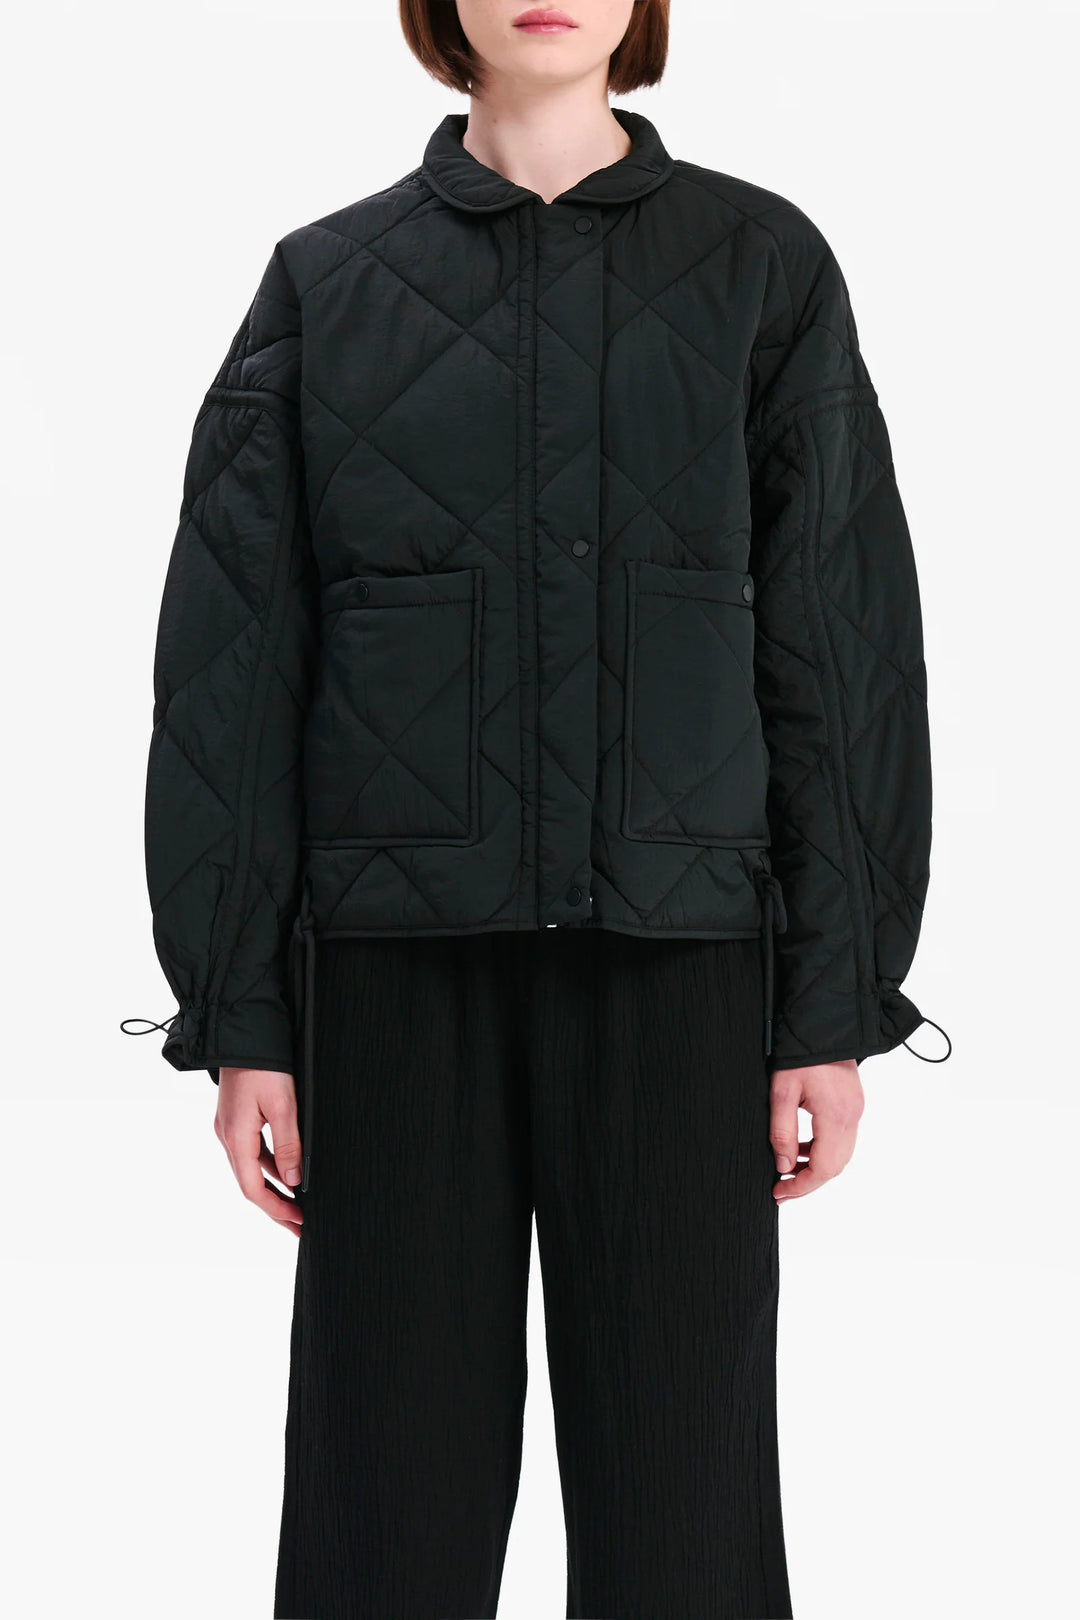 Sloane Puffer Jacket - Washed Black